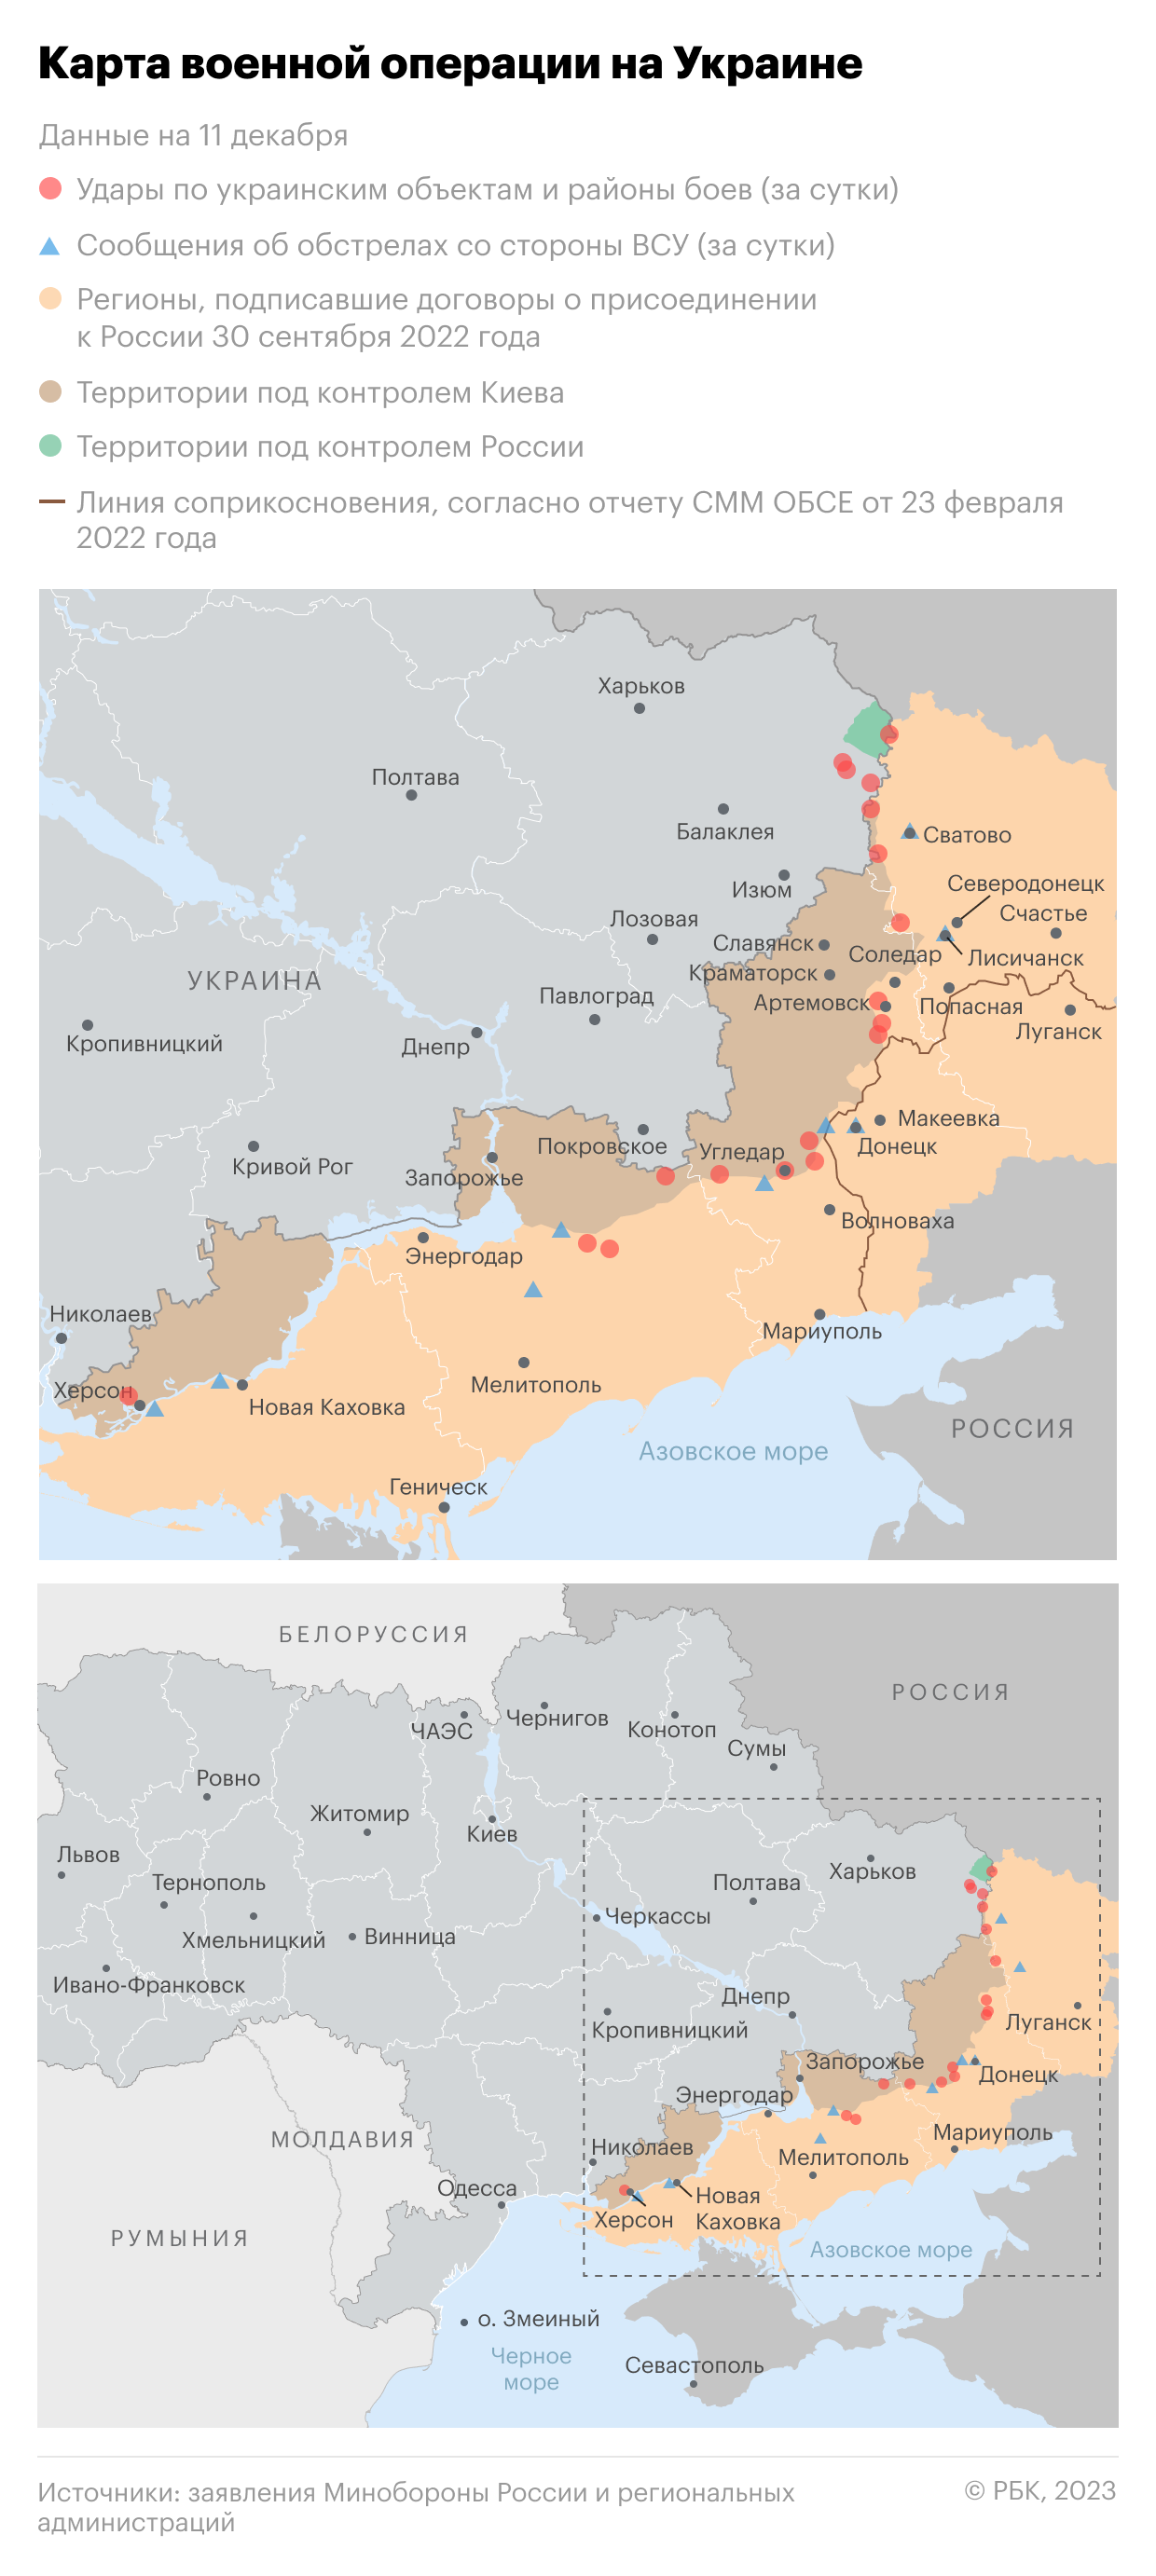 Военная операция на Украине. Карта на 11 декабря